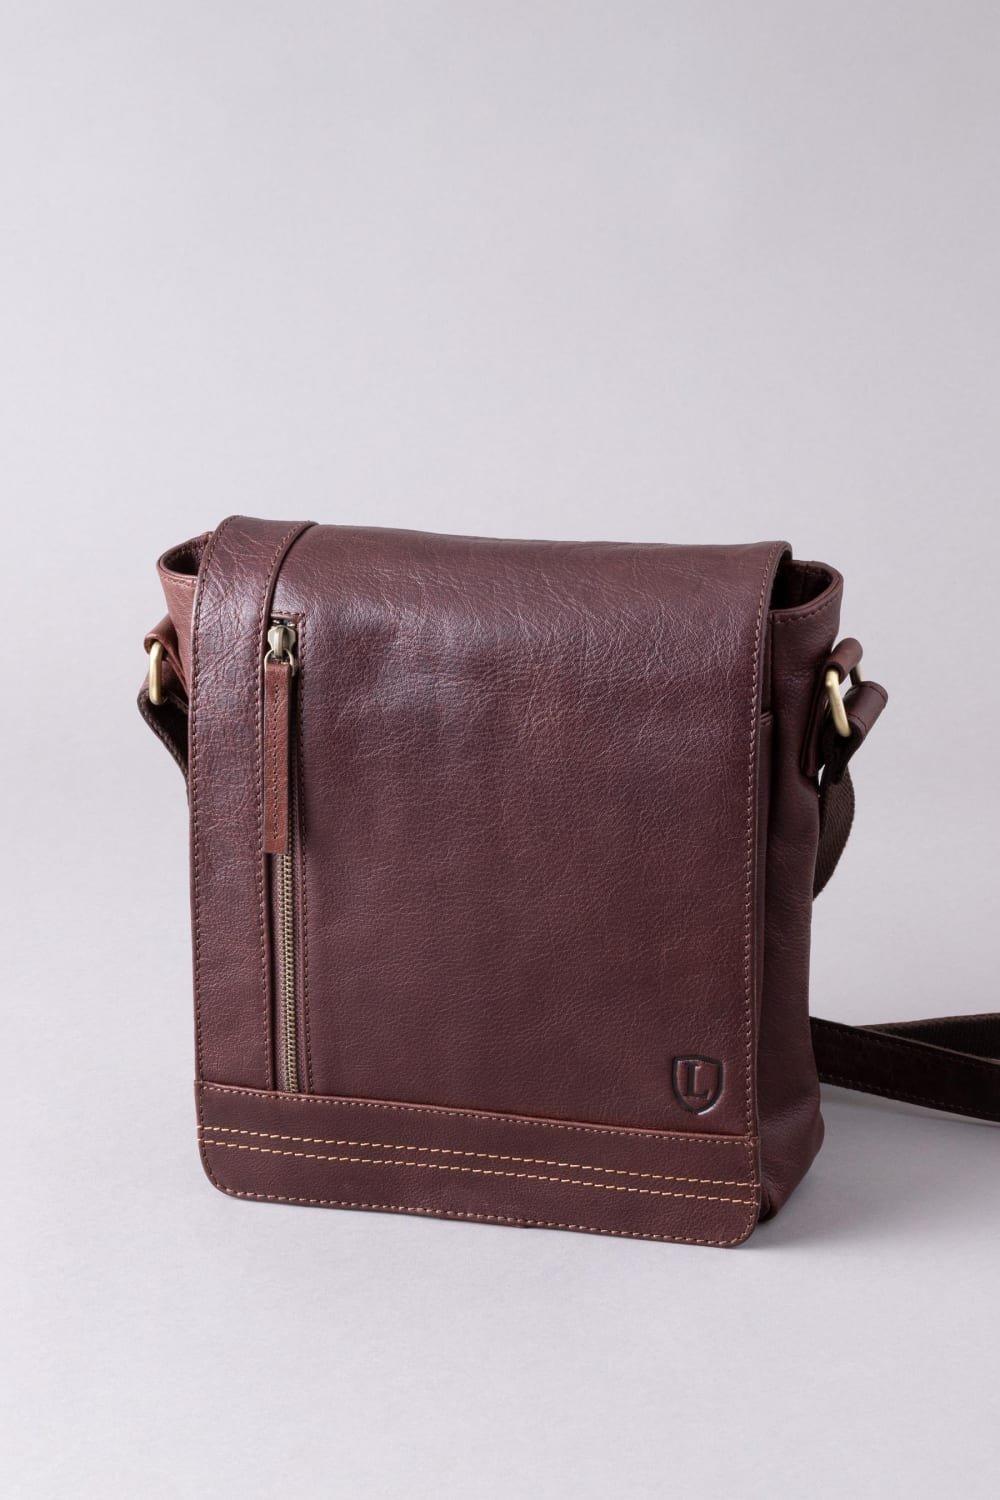 Кожаная сумка-мессенджер Keswick среднего размера Lakeland Leather, коричневый сумка кожаная женская с клапаном lmr 8101 11j